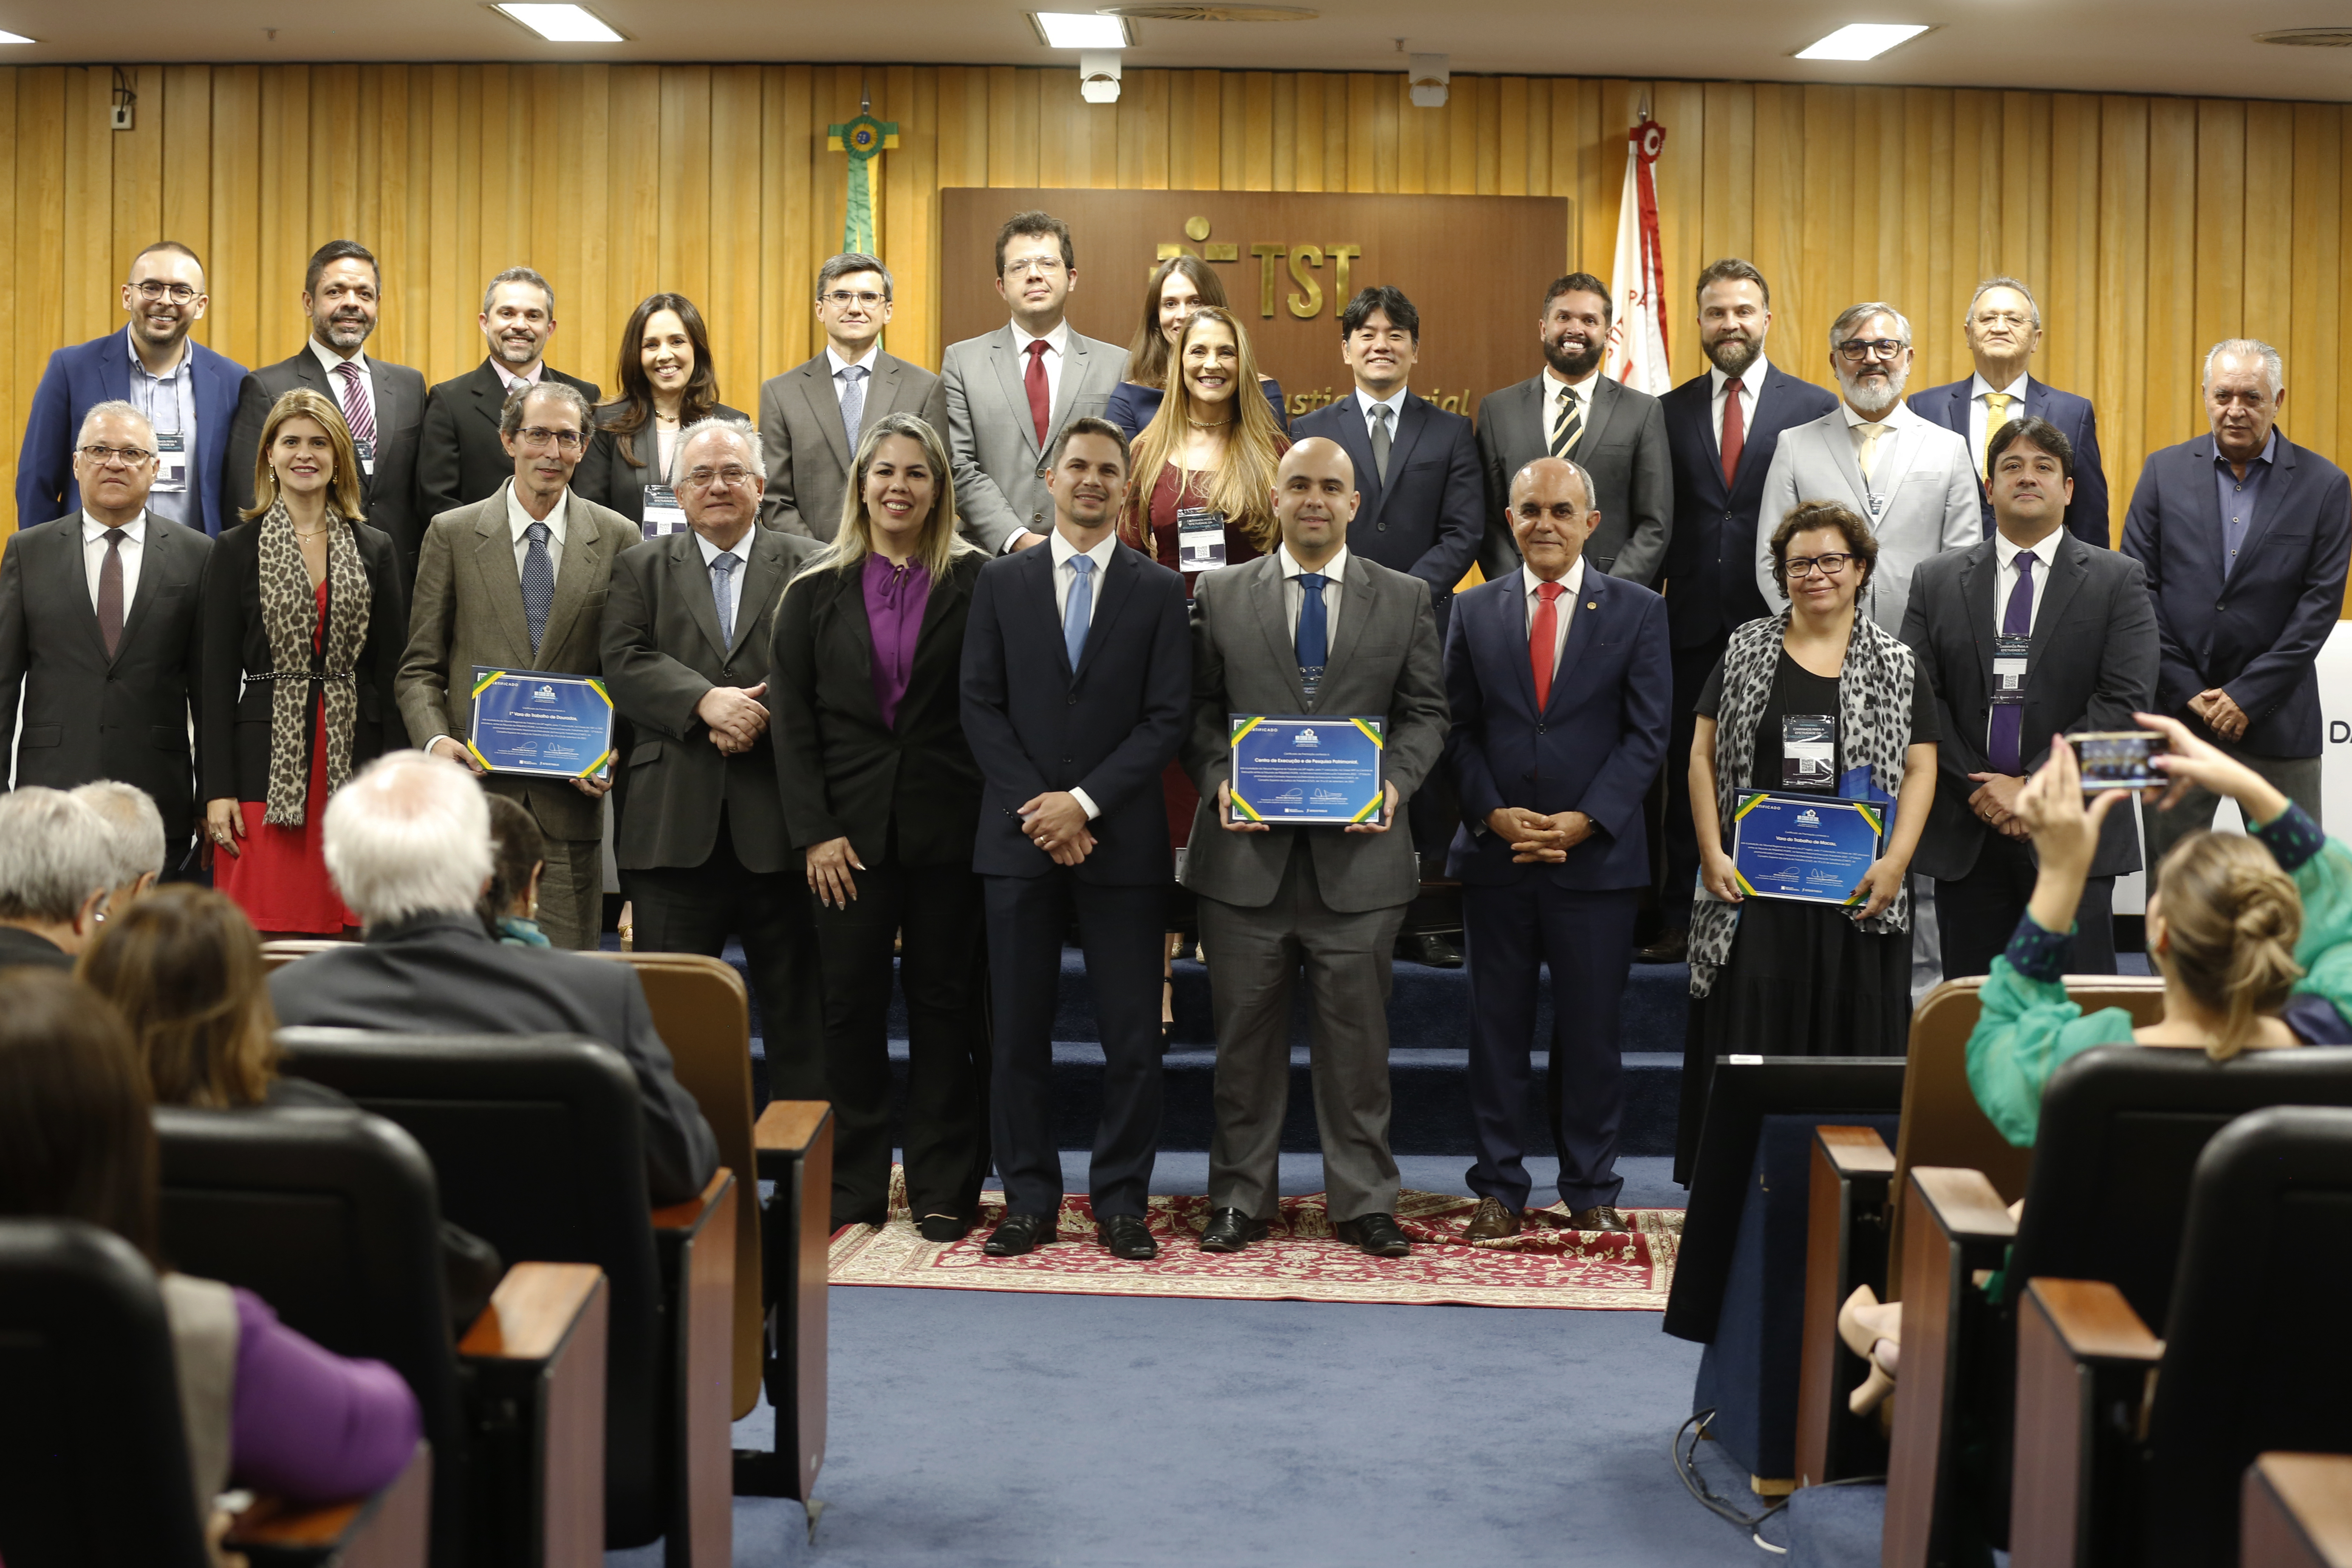 Foi a primeira vez unidades judiciárias de 1ª grau receberam a premiação. (Foto: Bárbara Cabral - Secom/TST)